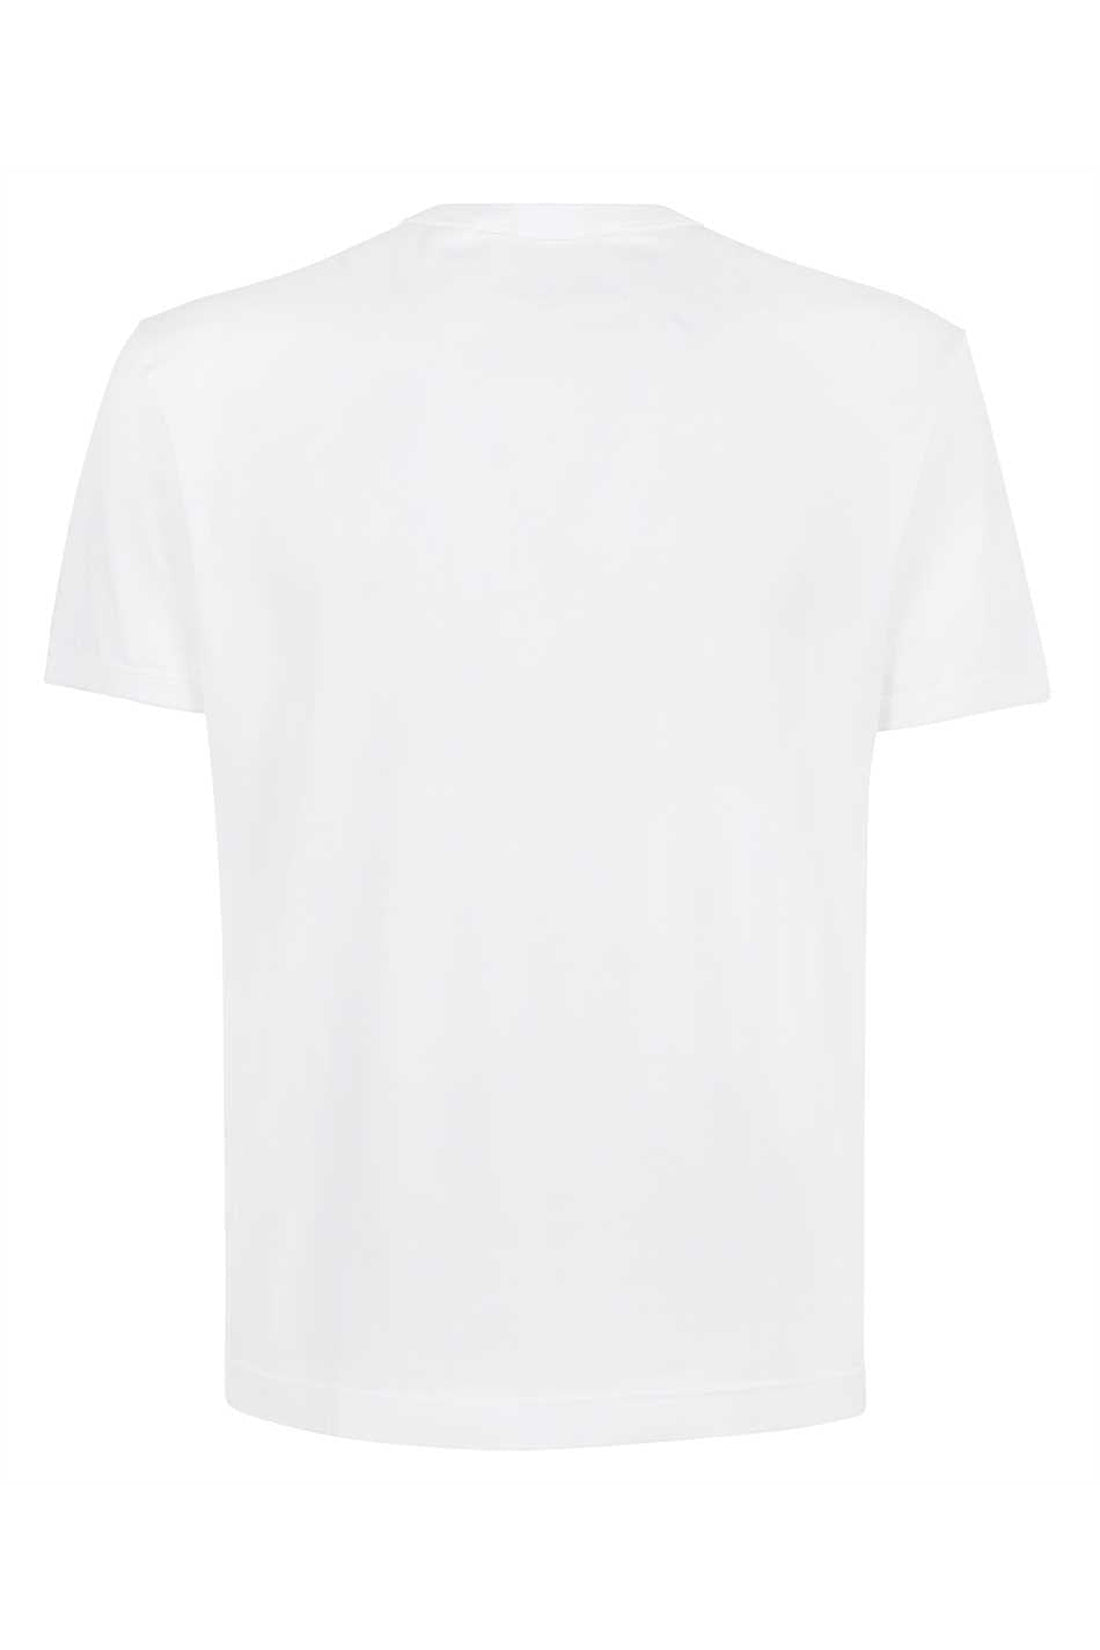 Dolce & Gabbana-OUTLET-SALE-Cotton henley T-shirt-ARCHIVIST